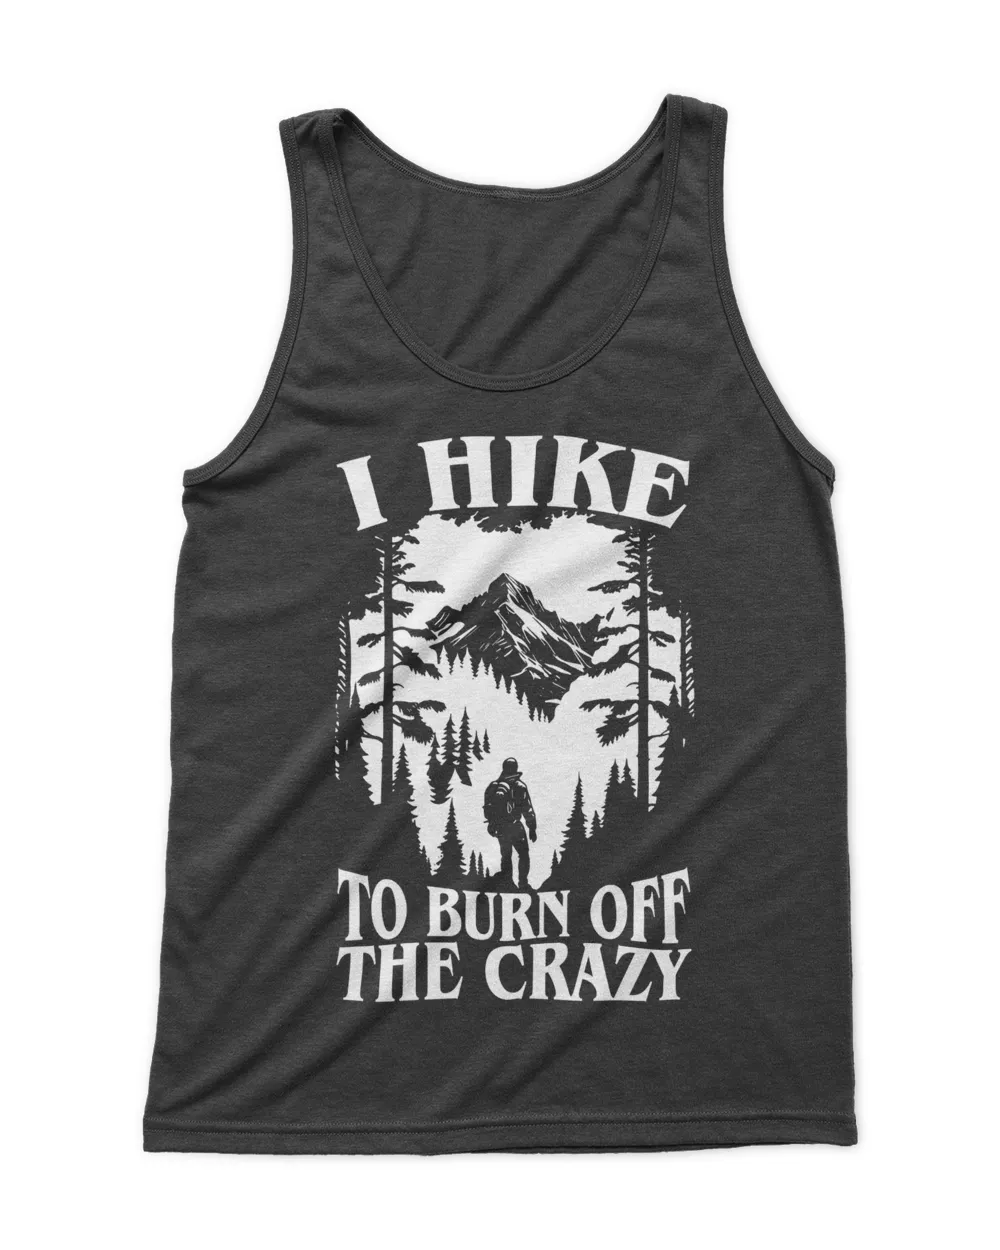 Hiking - I Hike To Burn Off The Crazy Tshirt